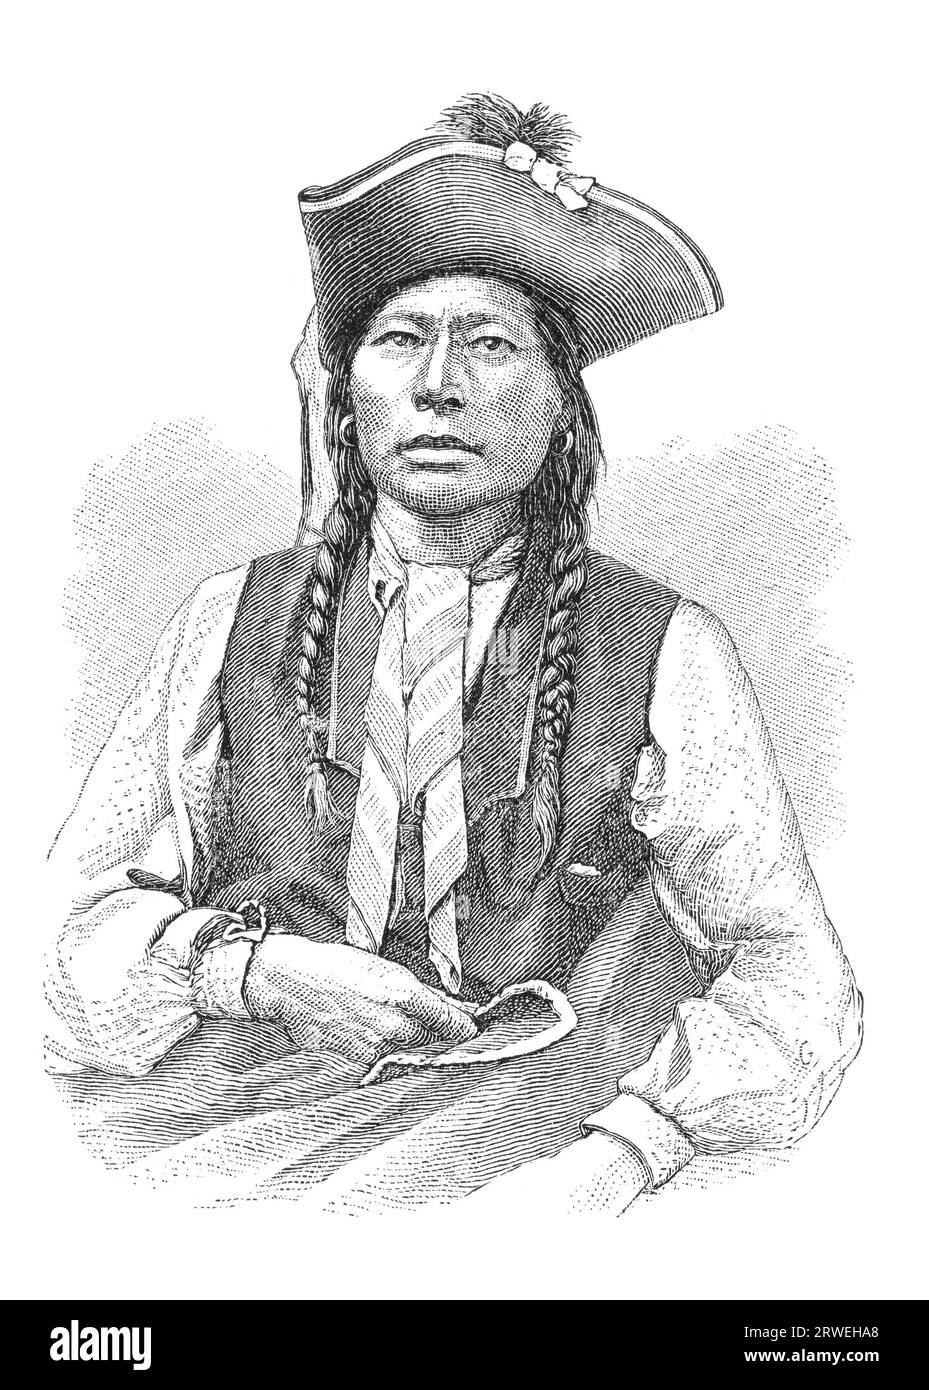 Arapaho nativo americano llamado Washington. Los Arapaho son una tribu de nativos americanos que viven históricamente en las llanuras orientales de Colorado y. Foto de stock